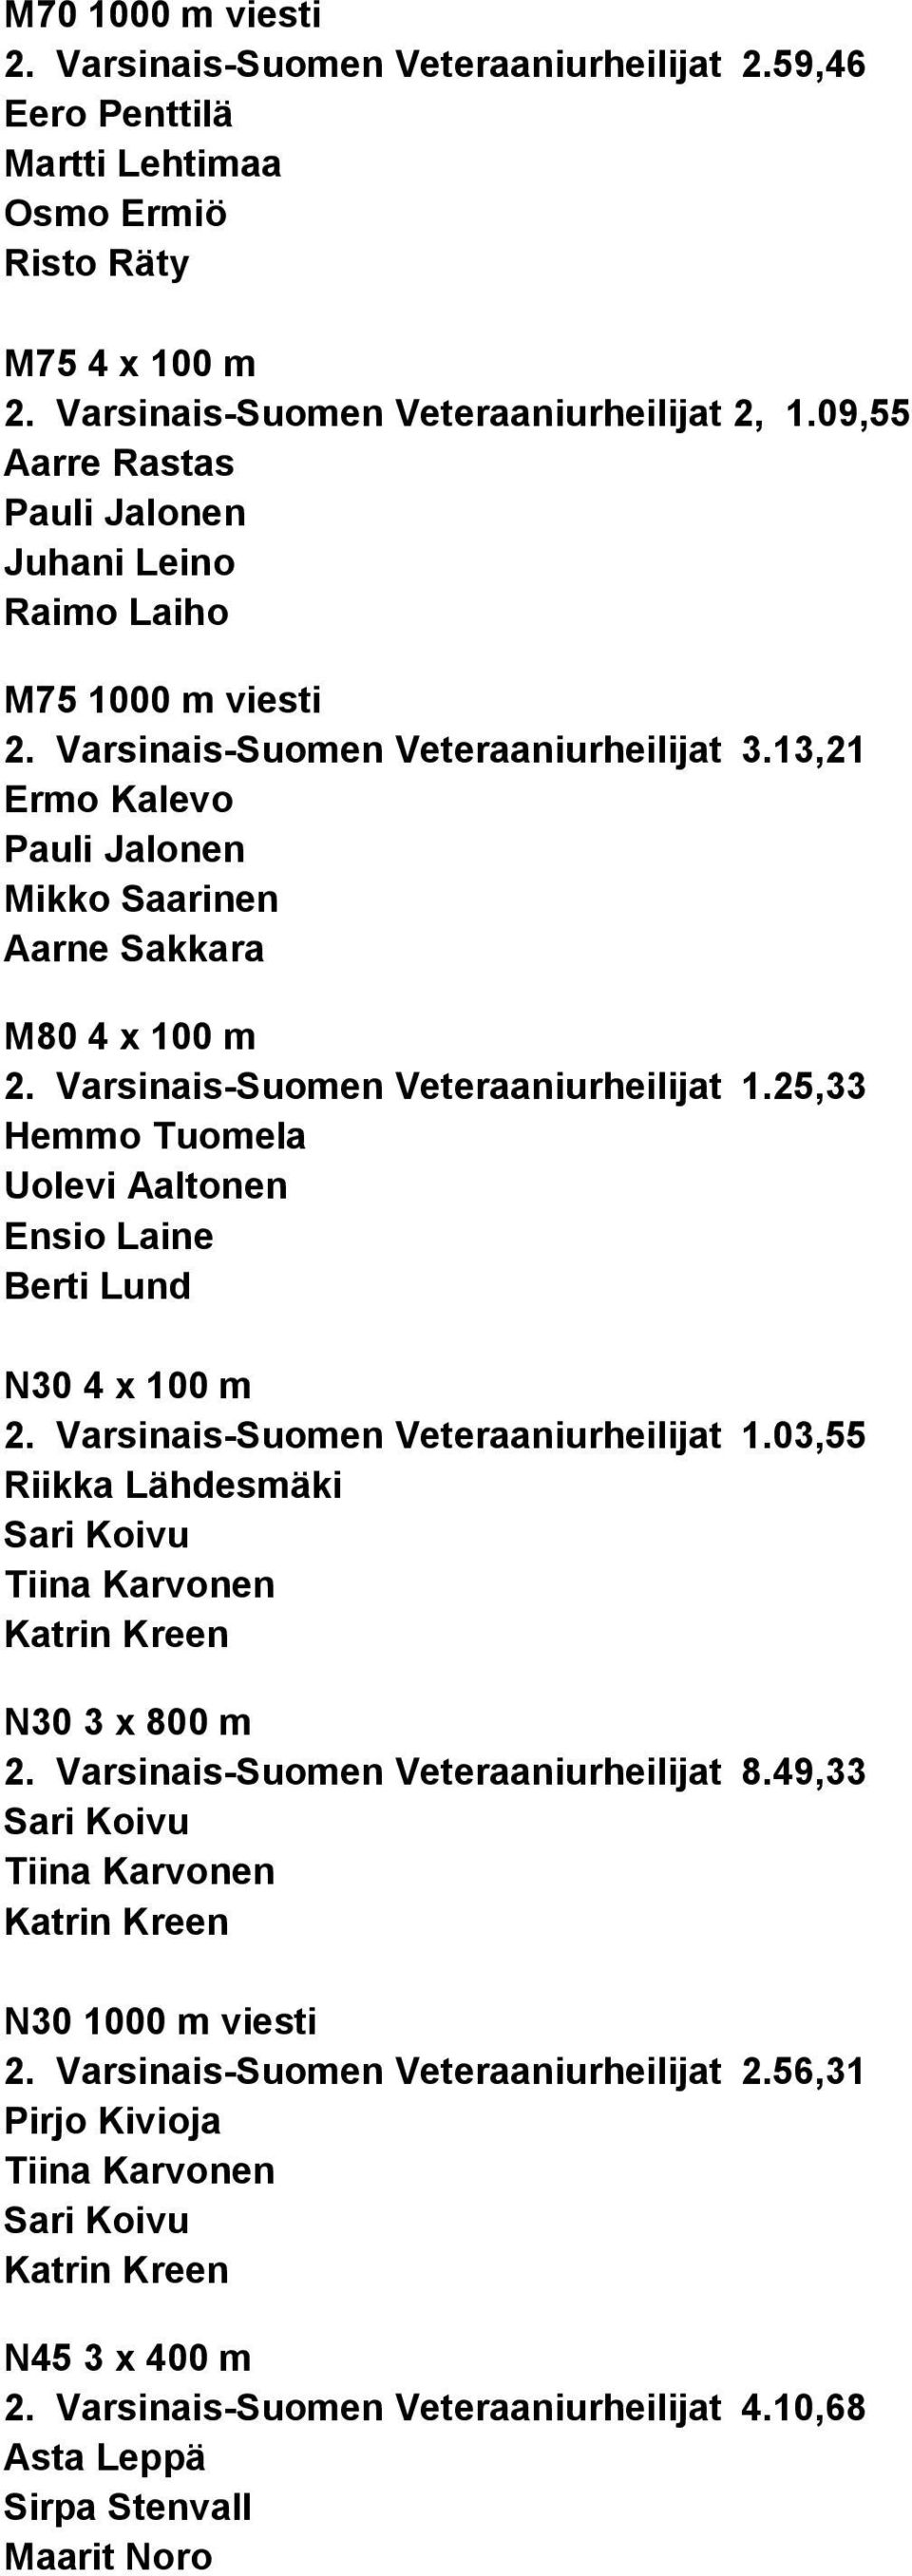 Varsinais-Suomen Veteraaniurheilijat 1.25,33 Hemmo Tuomela Uolevi Aaltonen Ensio Laine Berti Lund N30 4 x 100 m 2. Varsinais-Suomen Veteraaniurheilijat 1.